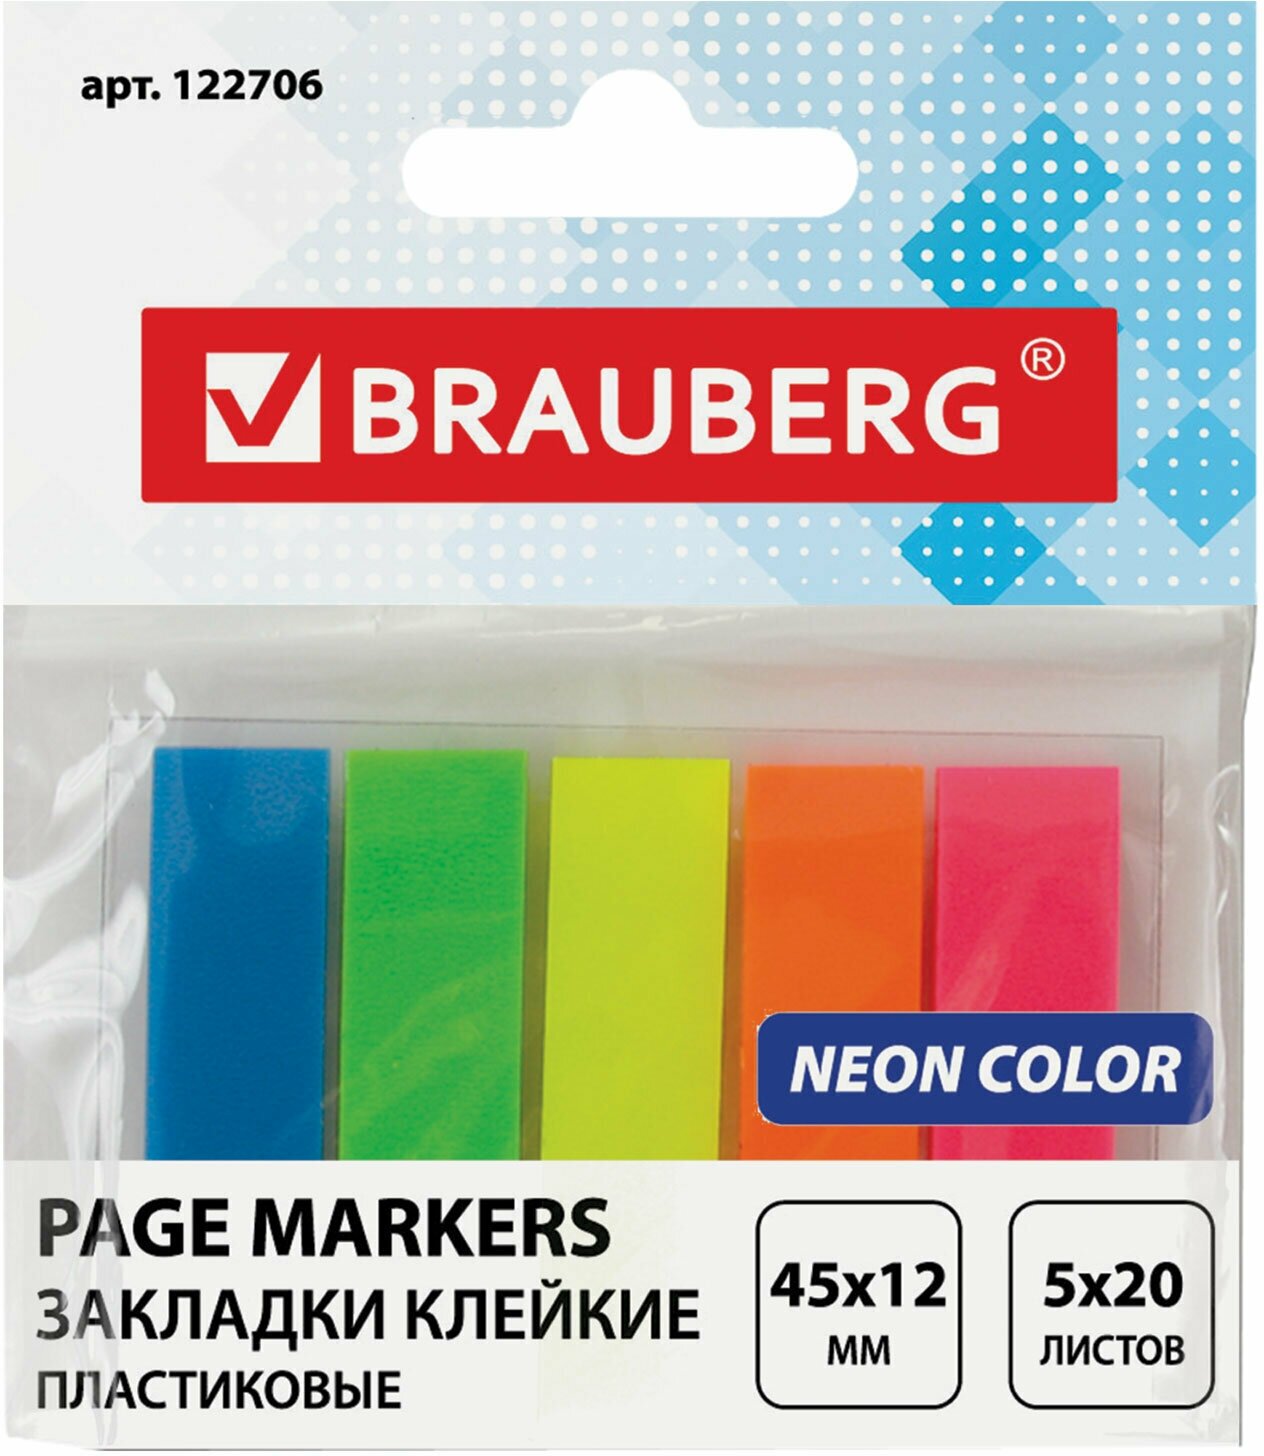 Закладки клейкие неоновые BRAUBERG 45х12 мм, 100шт (5 цв. х 20 л.), на пластиковом основании, 122706, - Комплект 6 шт.(компл.)